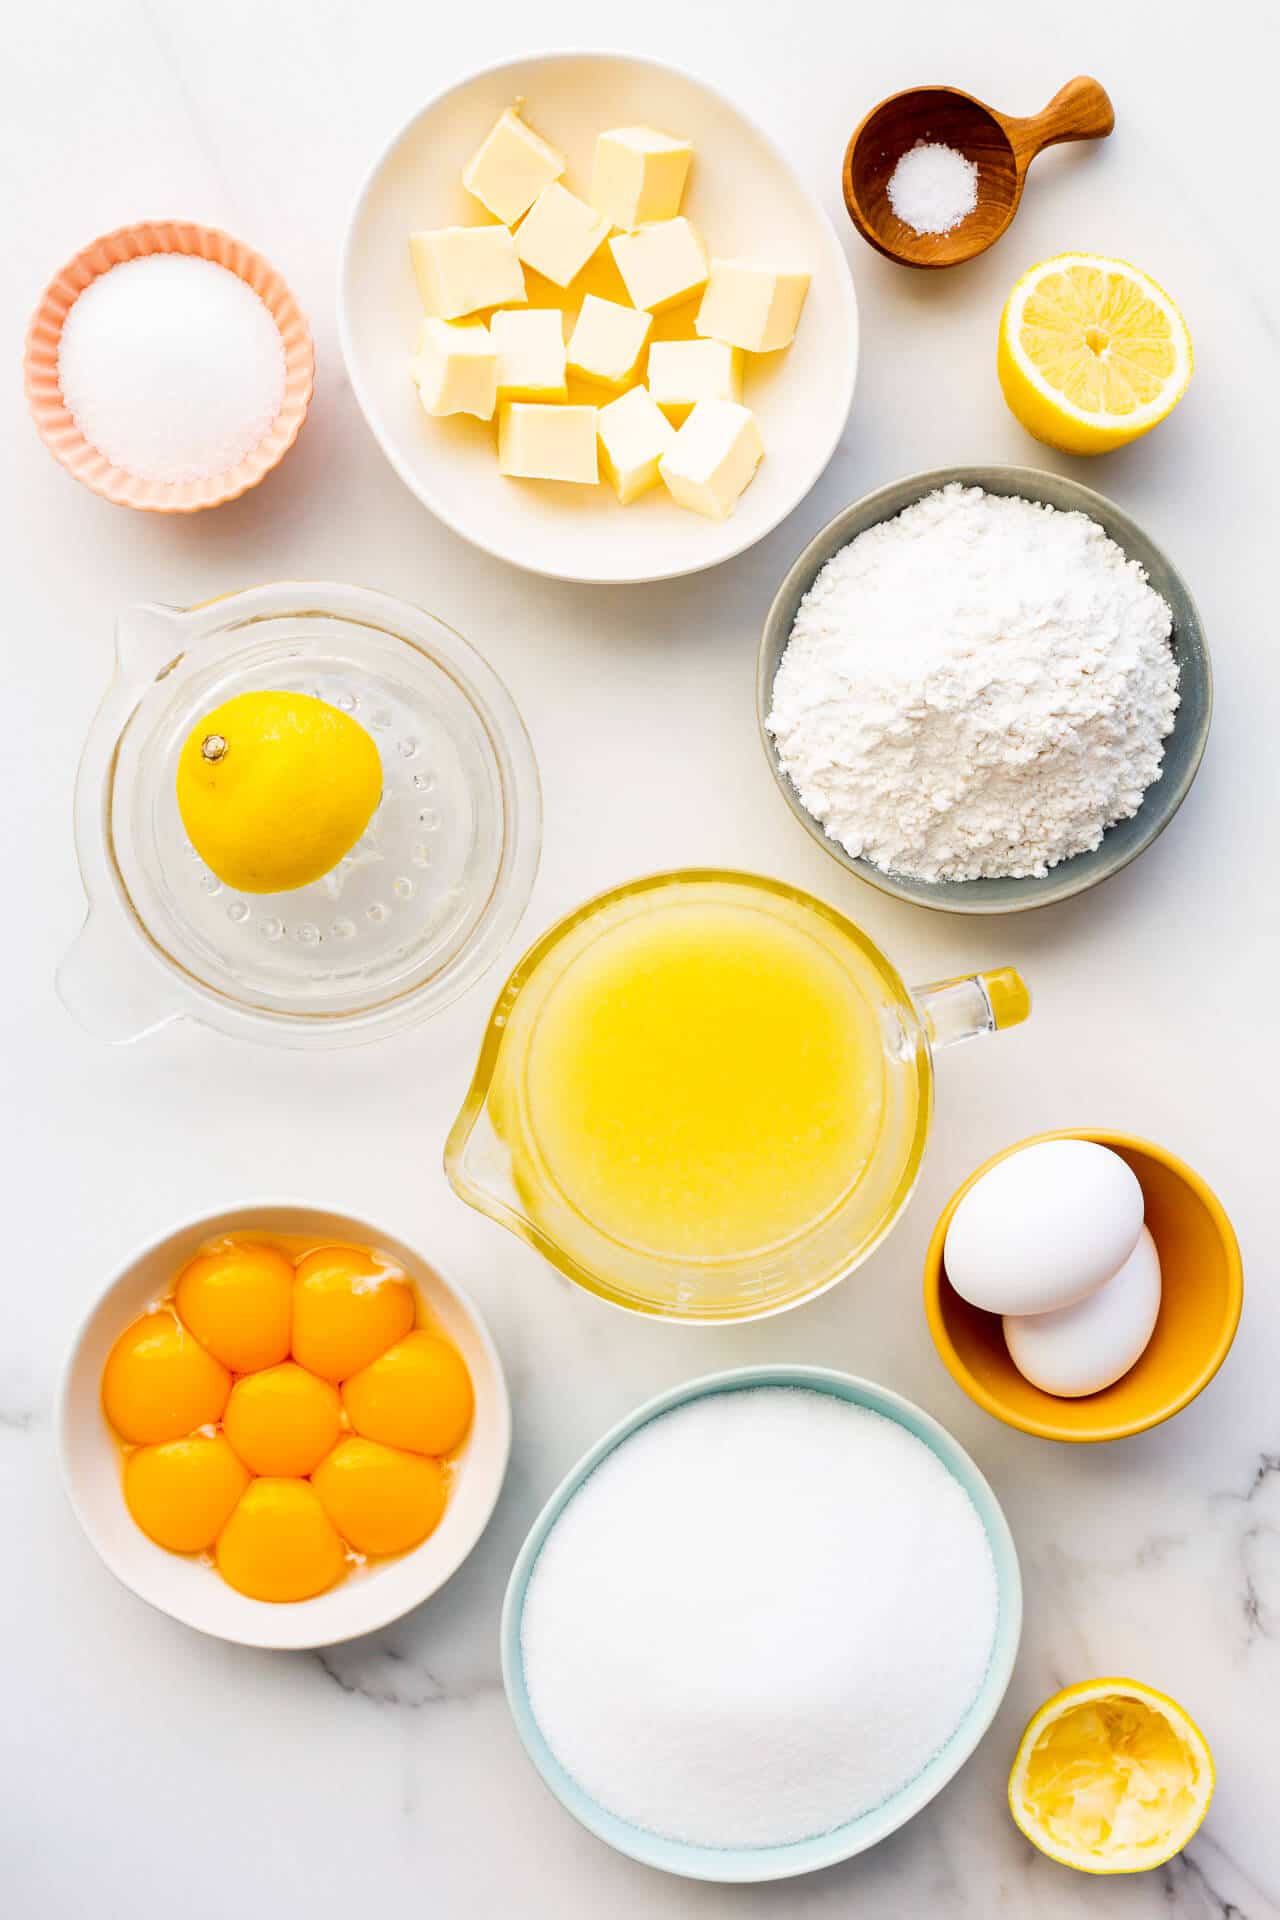 Ingredients to make lemon bars from scratch measured out, including butter, sugar, salt, lemons, lemon juice, flour, eggs and egg yolks.